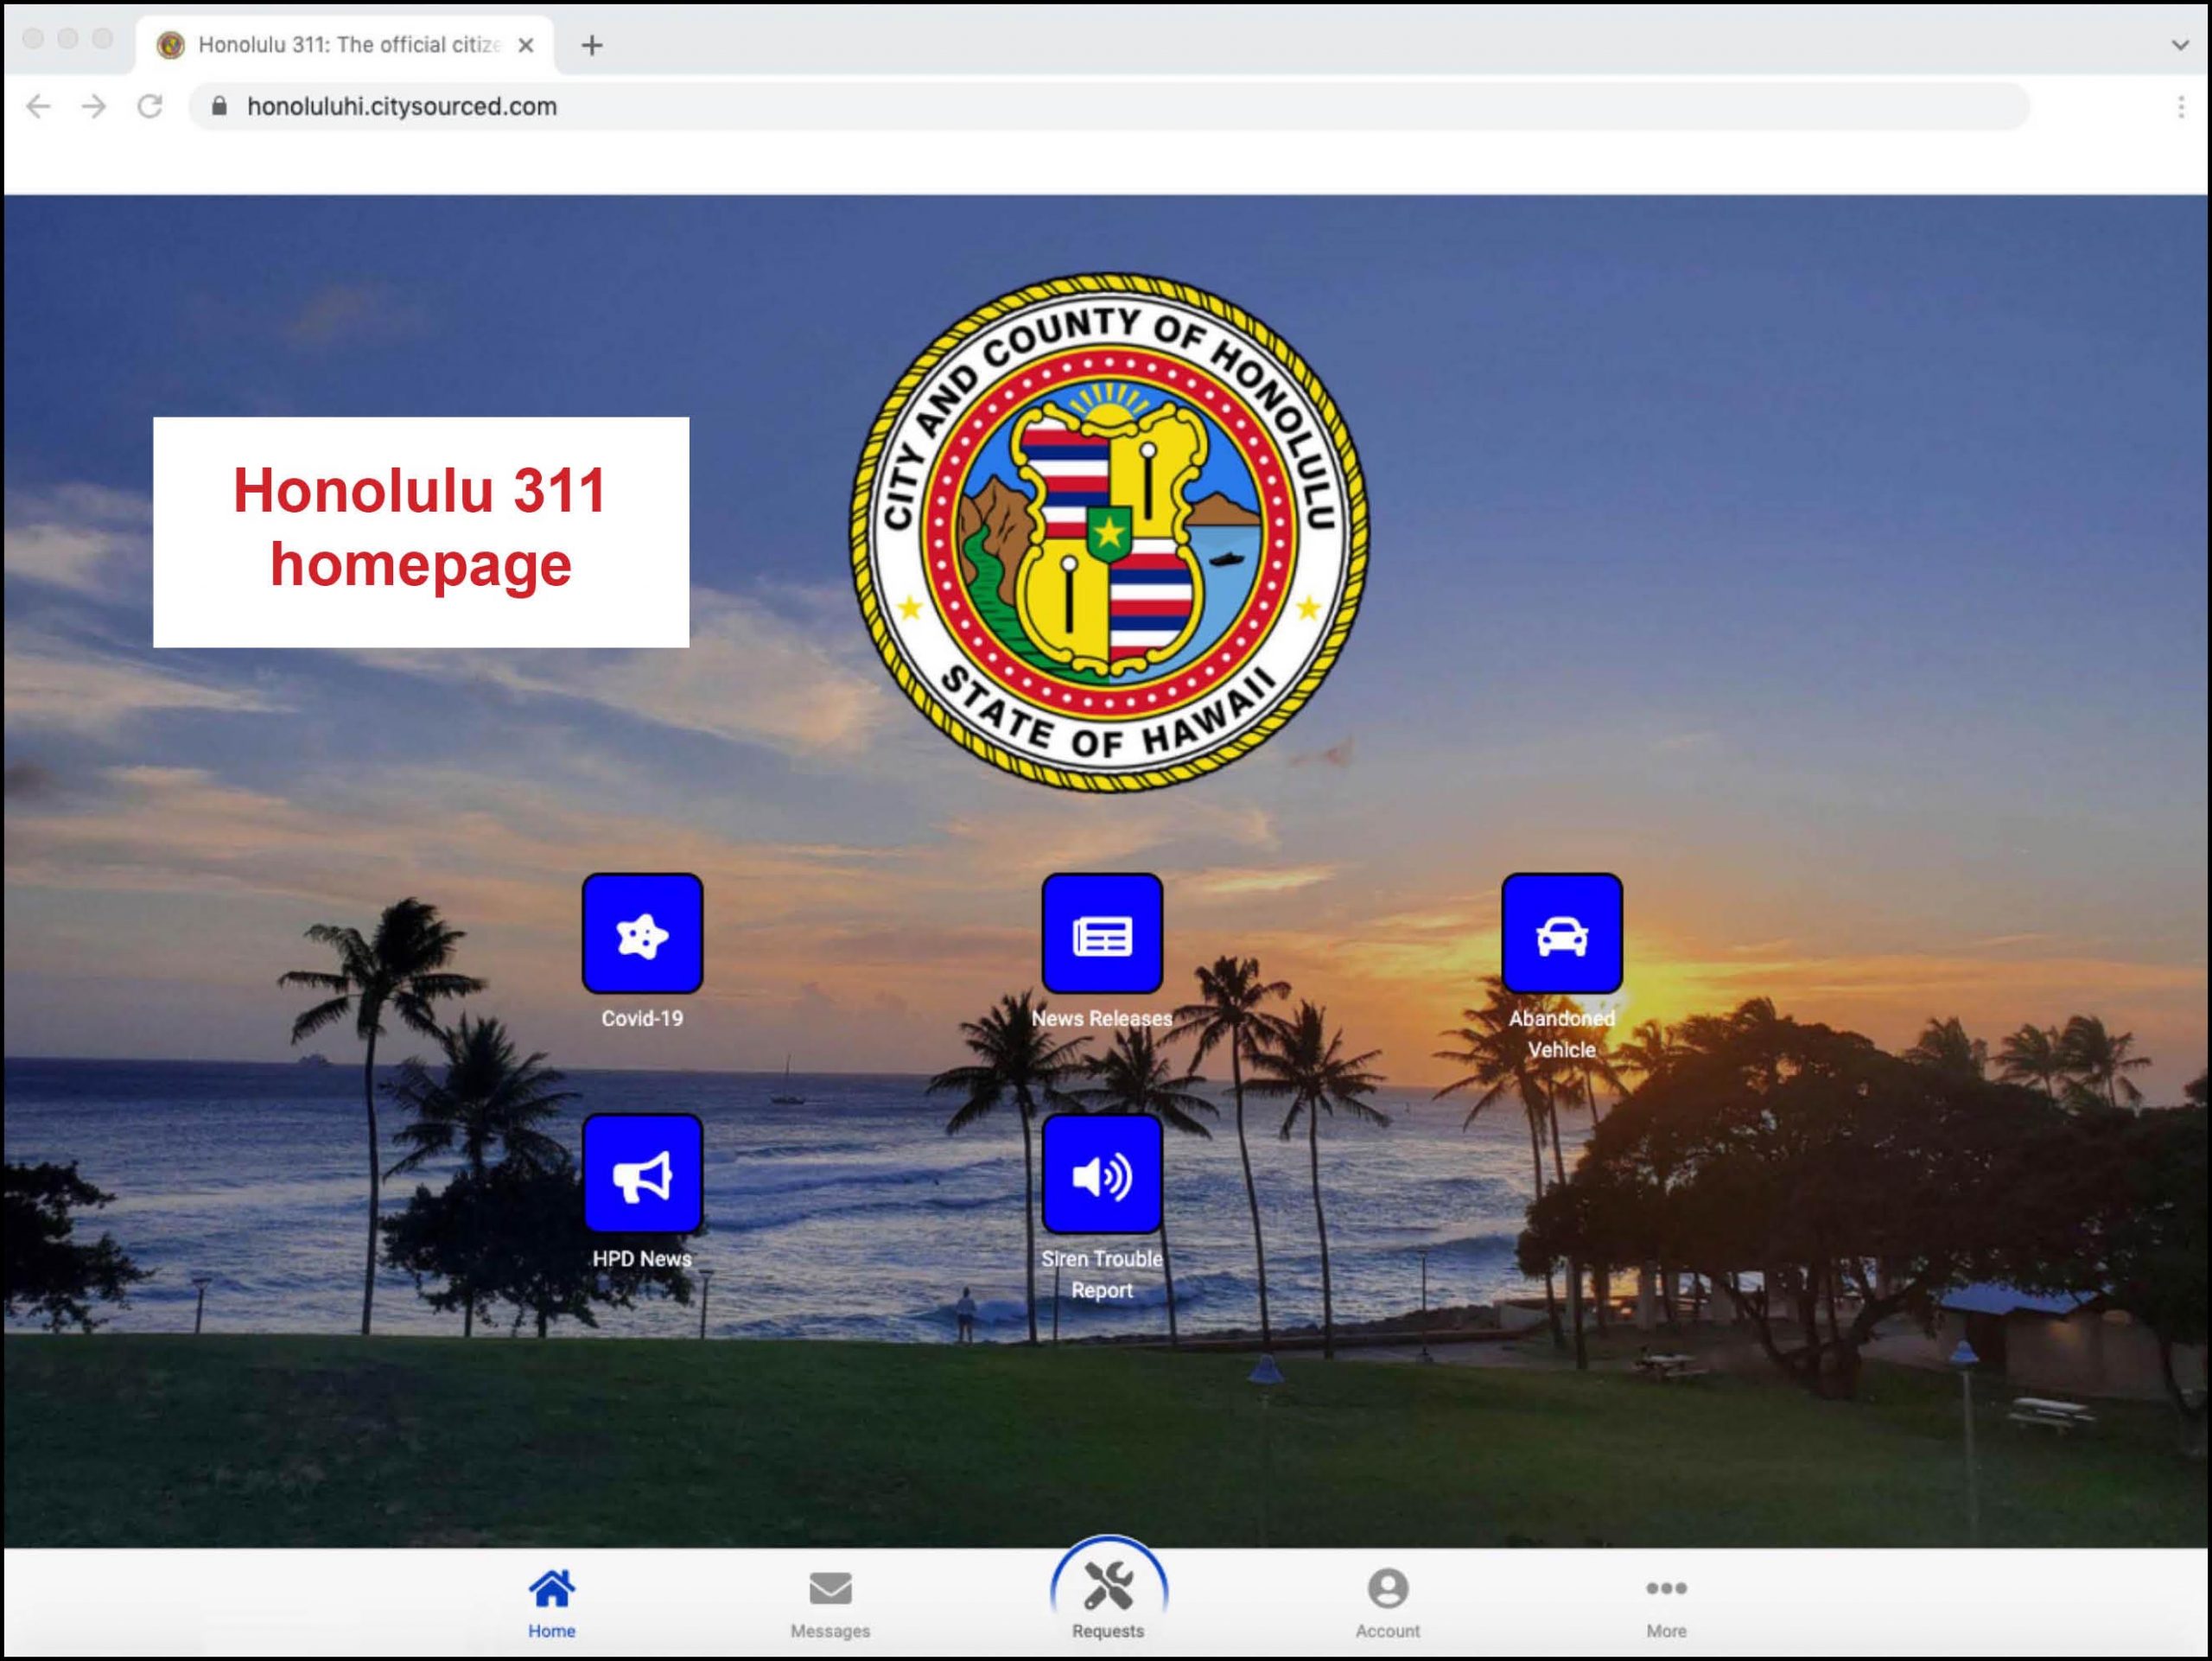 Screenshot of the Honolulu 311 homepage